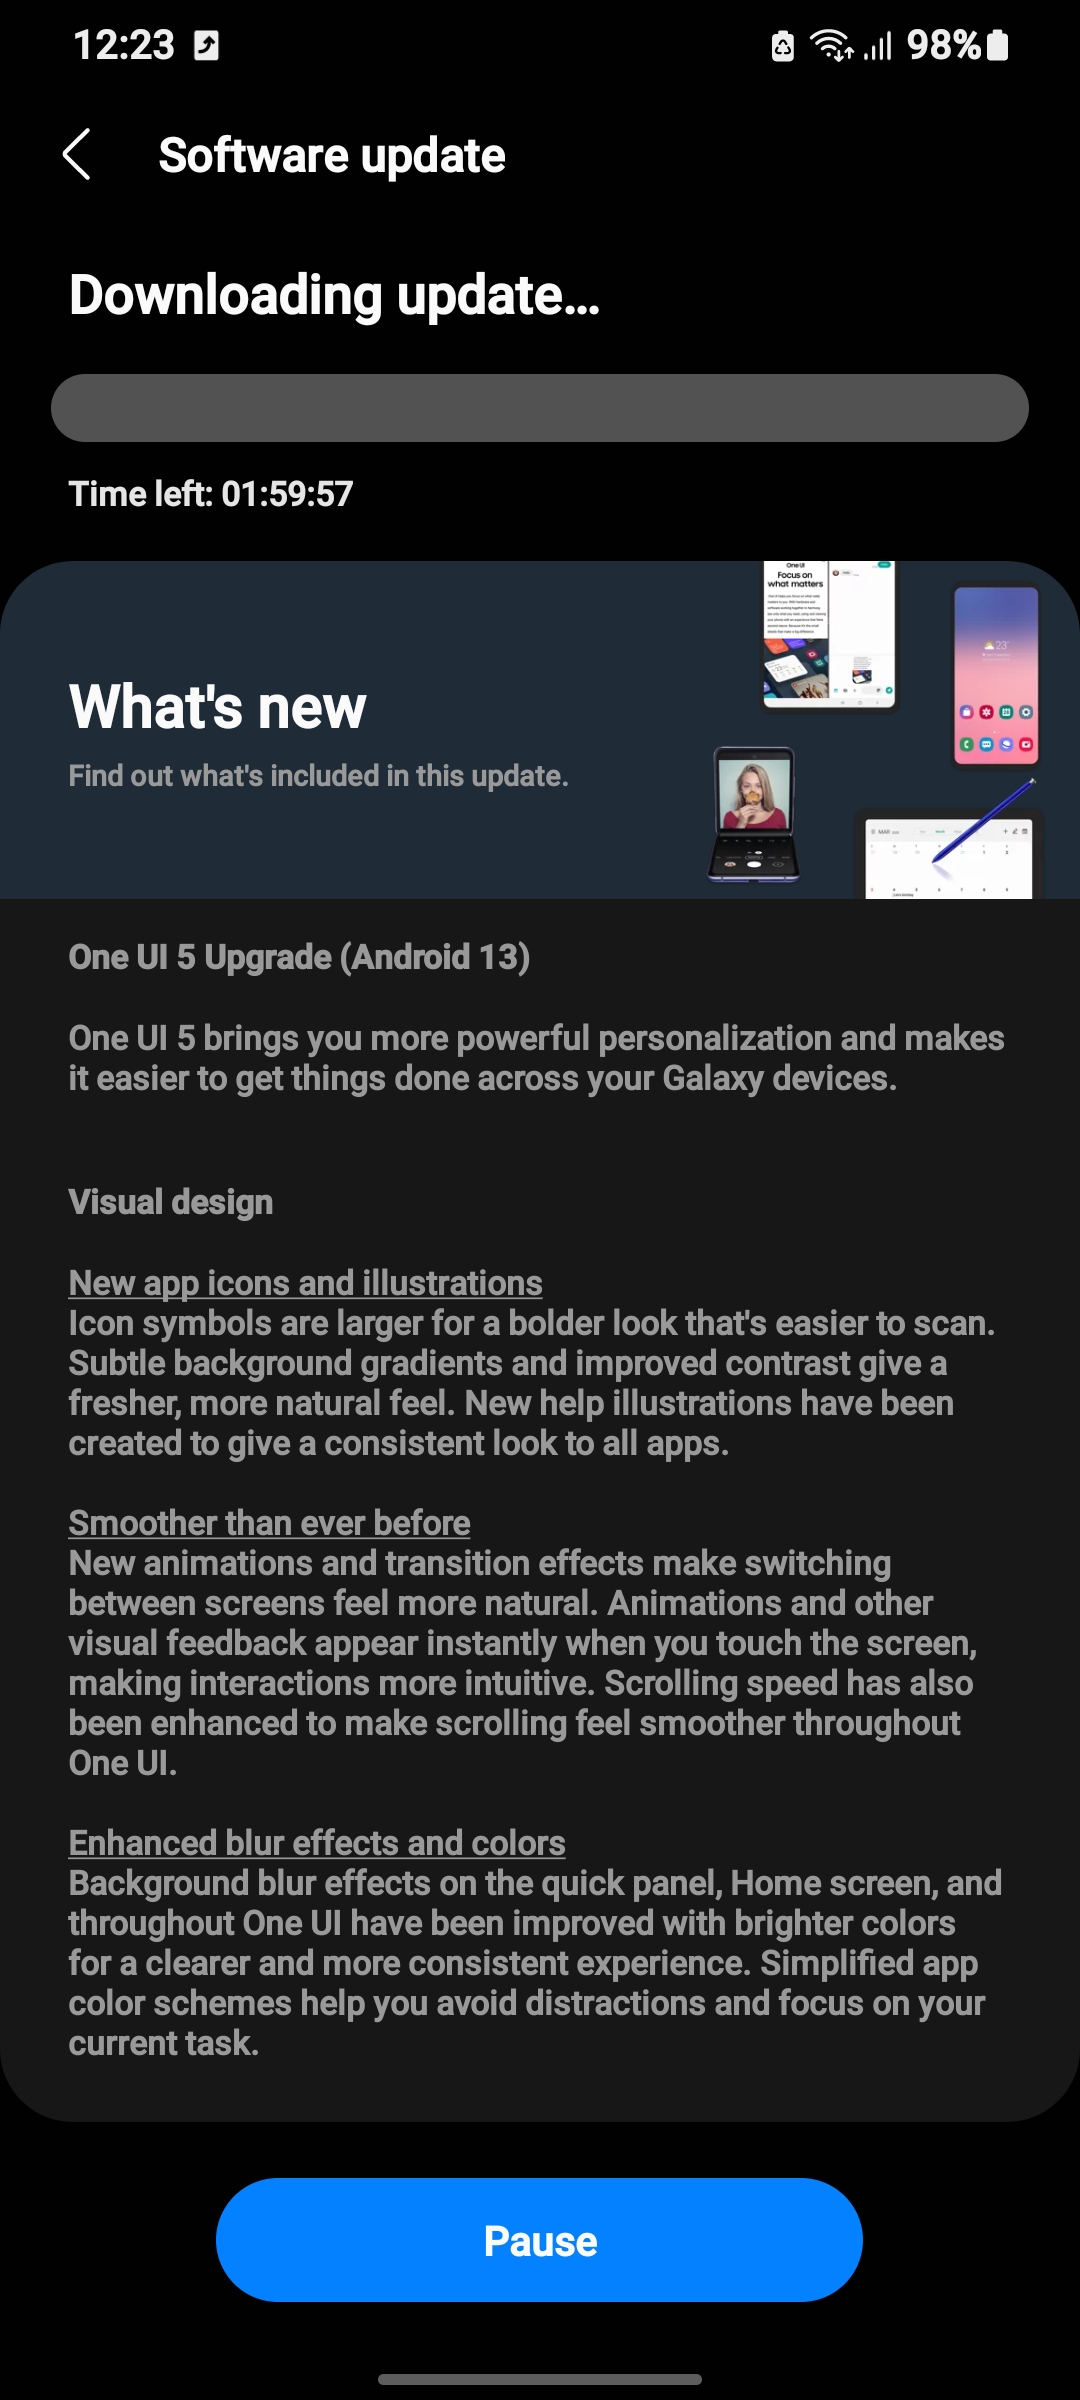 Chào đón Android 13 One UI 5.0 với Galaxy S21 Ultra. Được phát triển với những tính năng cải tiến và tối ưu hóa, việc nâng cấp này sẽ khiến cho trải nghiệm sử dụng điện thoại của bạn trở nên hoàn hảo hơn bao giờ hết. Hãy cùng khám phá thông tin đầy thú vị về bản nâng cấp Android mới cùng chúng tôi.